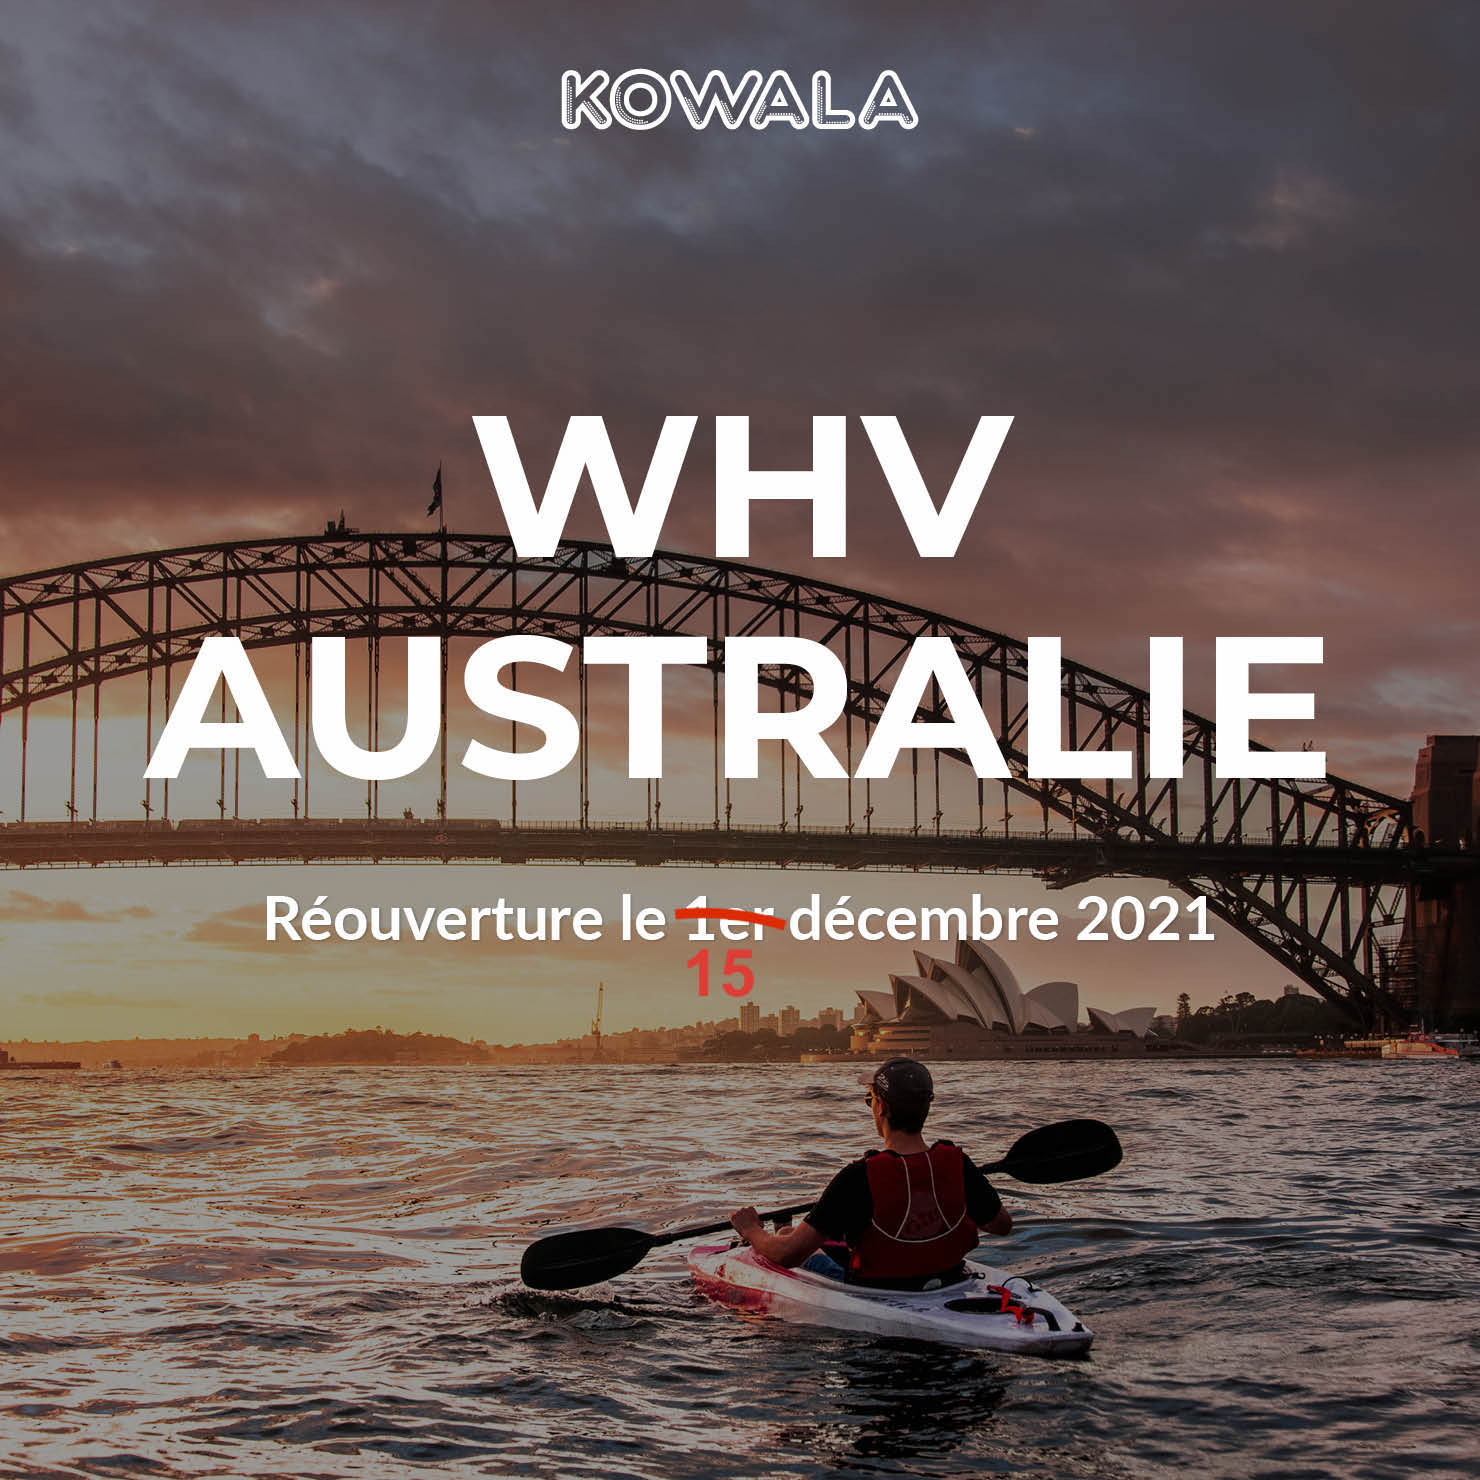 Réouverture de l'Australie aux PVT / WHV reportée au 15 décembre 2021